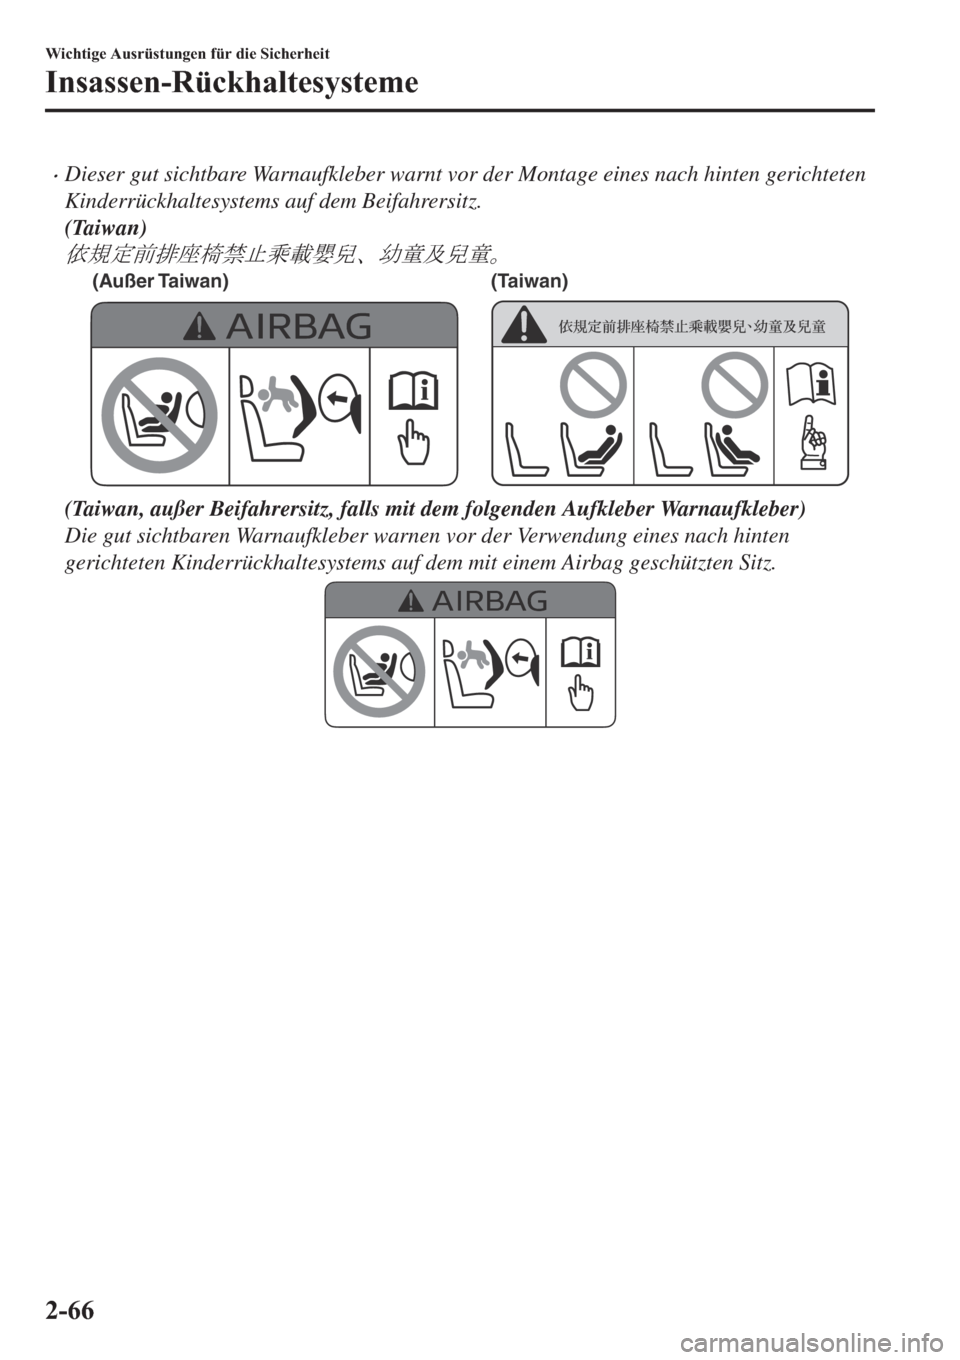 MAZDA MODEL 6 2019  Betriebsanleitung (in German) �xDieser gut sichtbare Warnaufkleber warnt vor der Montage eines nach hinten gerichteten
Kinderrückhaltesystems auf dem Beifahrersitz.
(Taiwan)
k0dS<ÙÔ&—F
(Außer Taiwan) (Taiwan)
(Taiwa